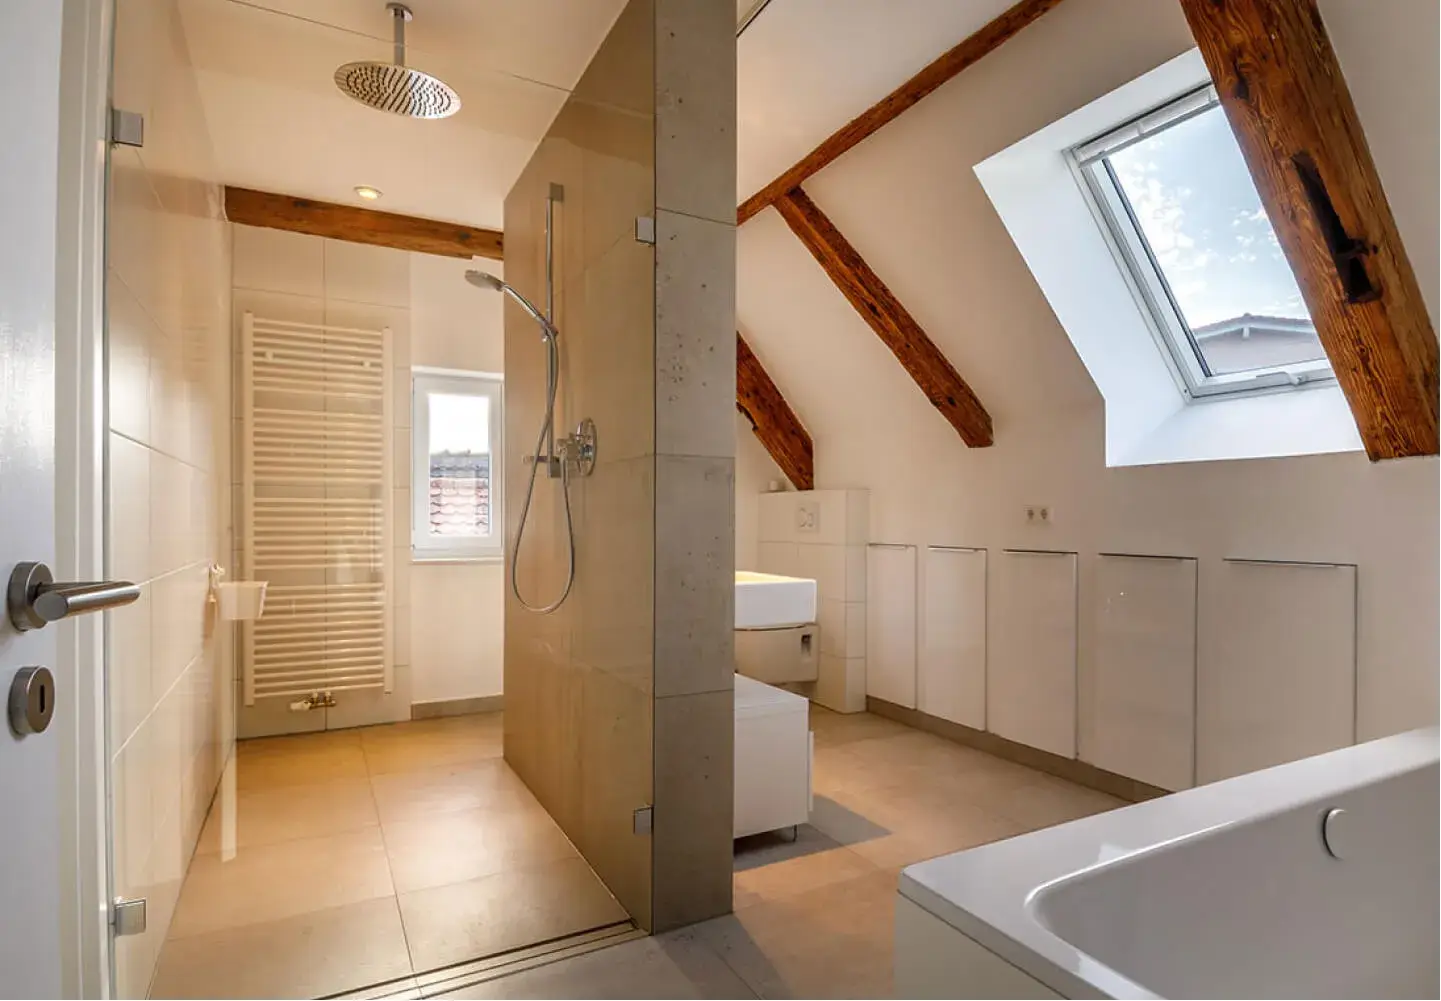 Saniertes Badezimmer im Modernen Baustil